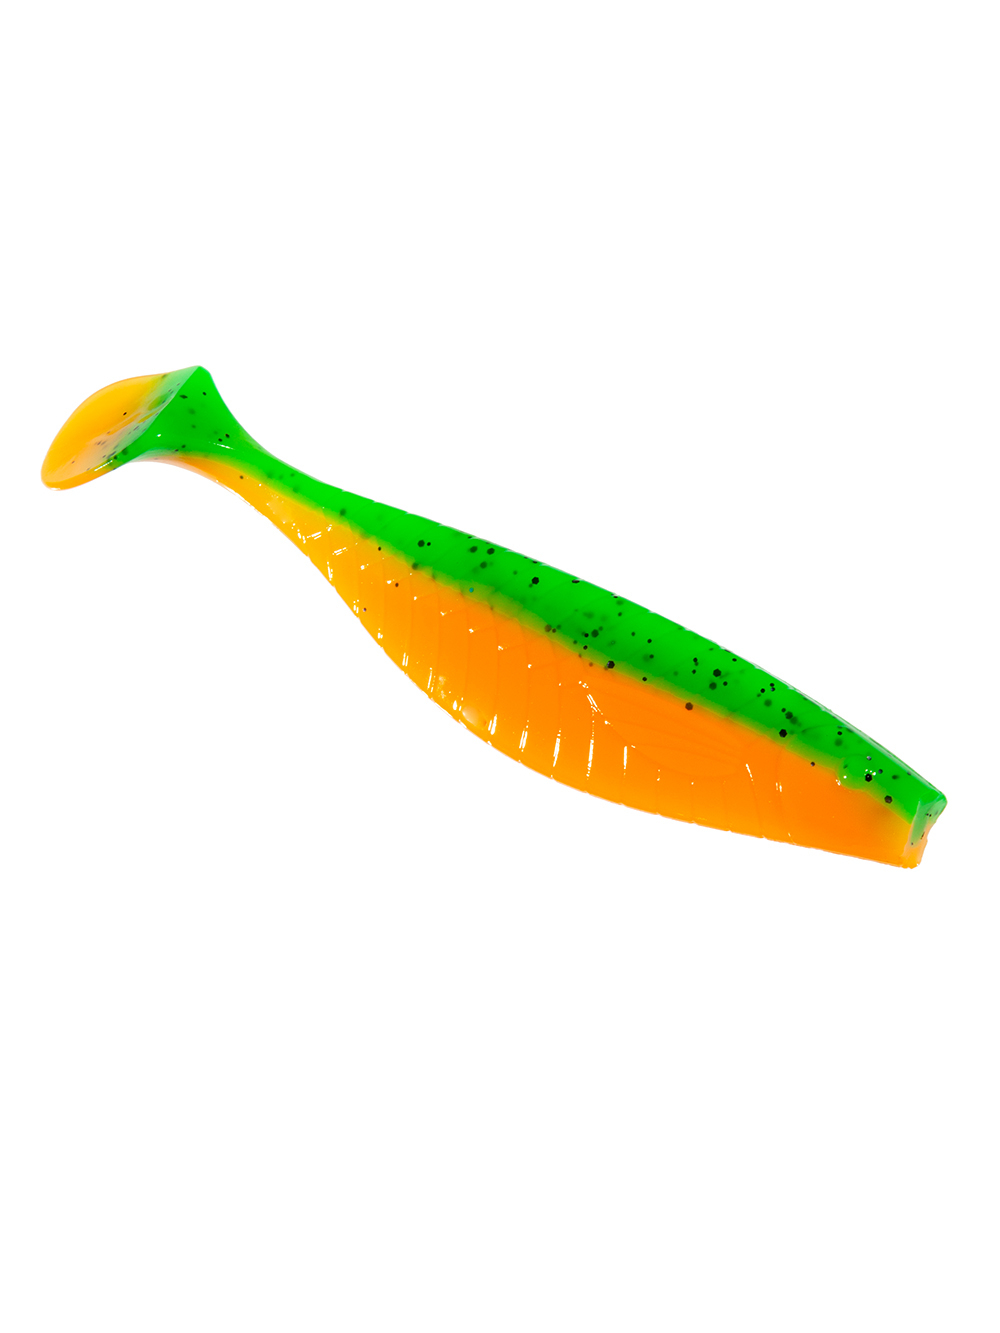 Приманка ZUB-PROVOCATOR 123мм(4,8")-4шт, (цвет 022) зеленый верх -оранжевый низ